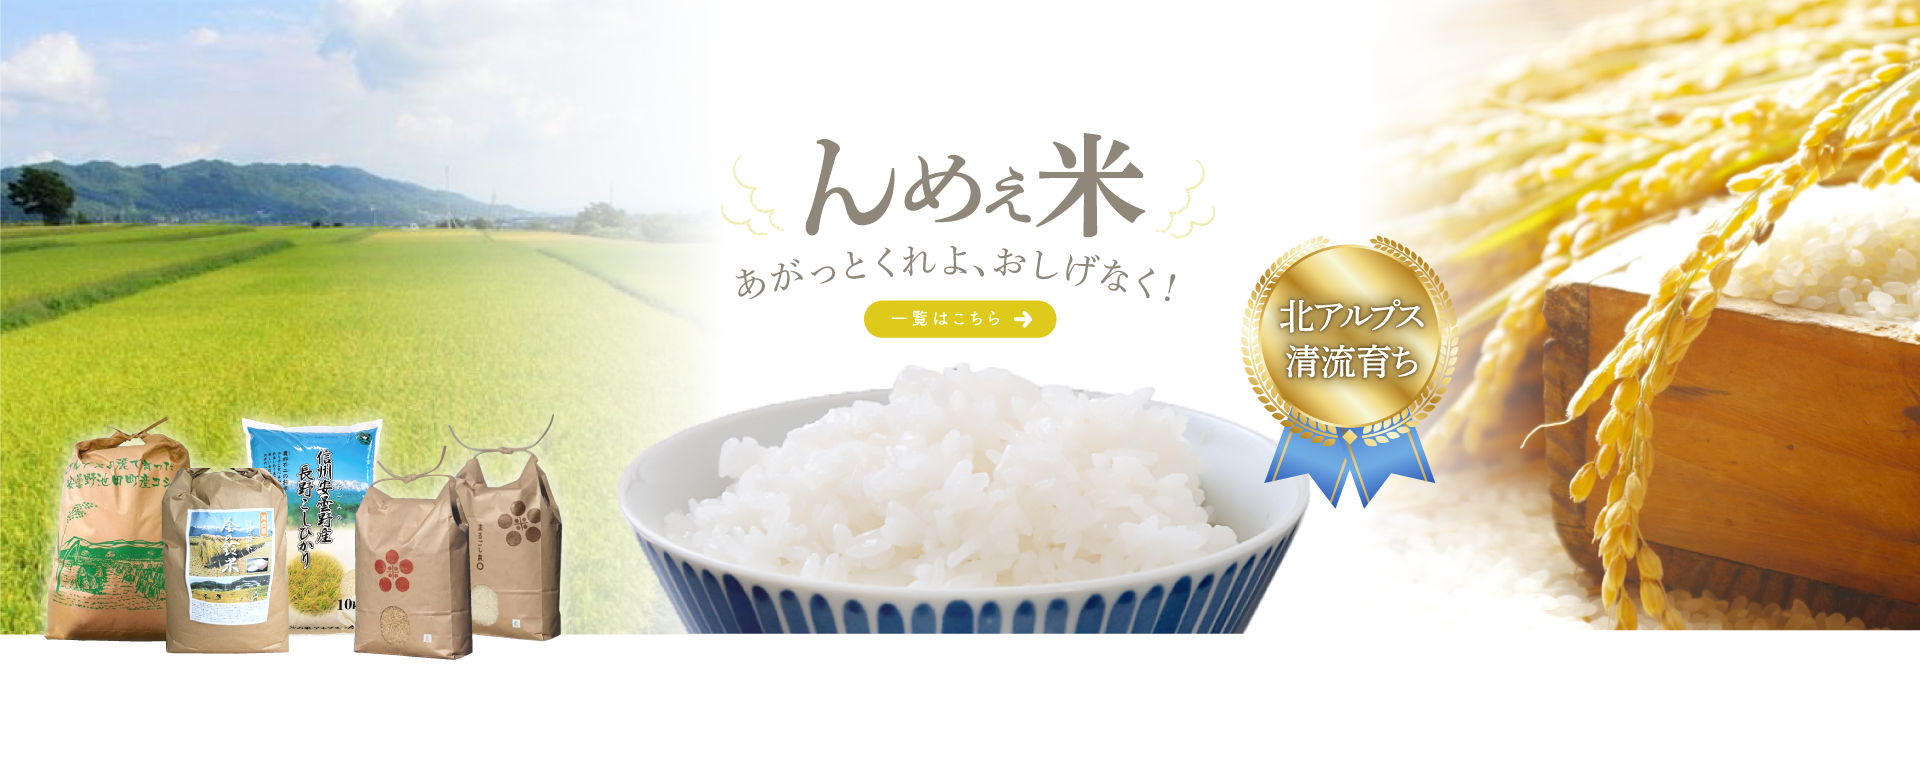 池田町の米